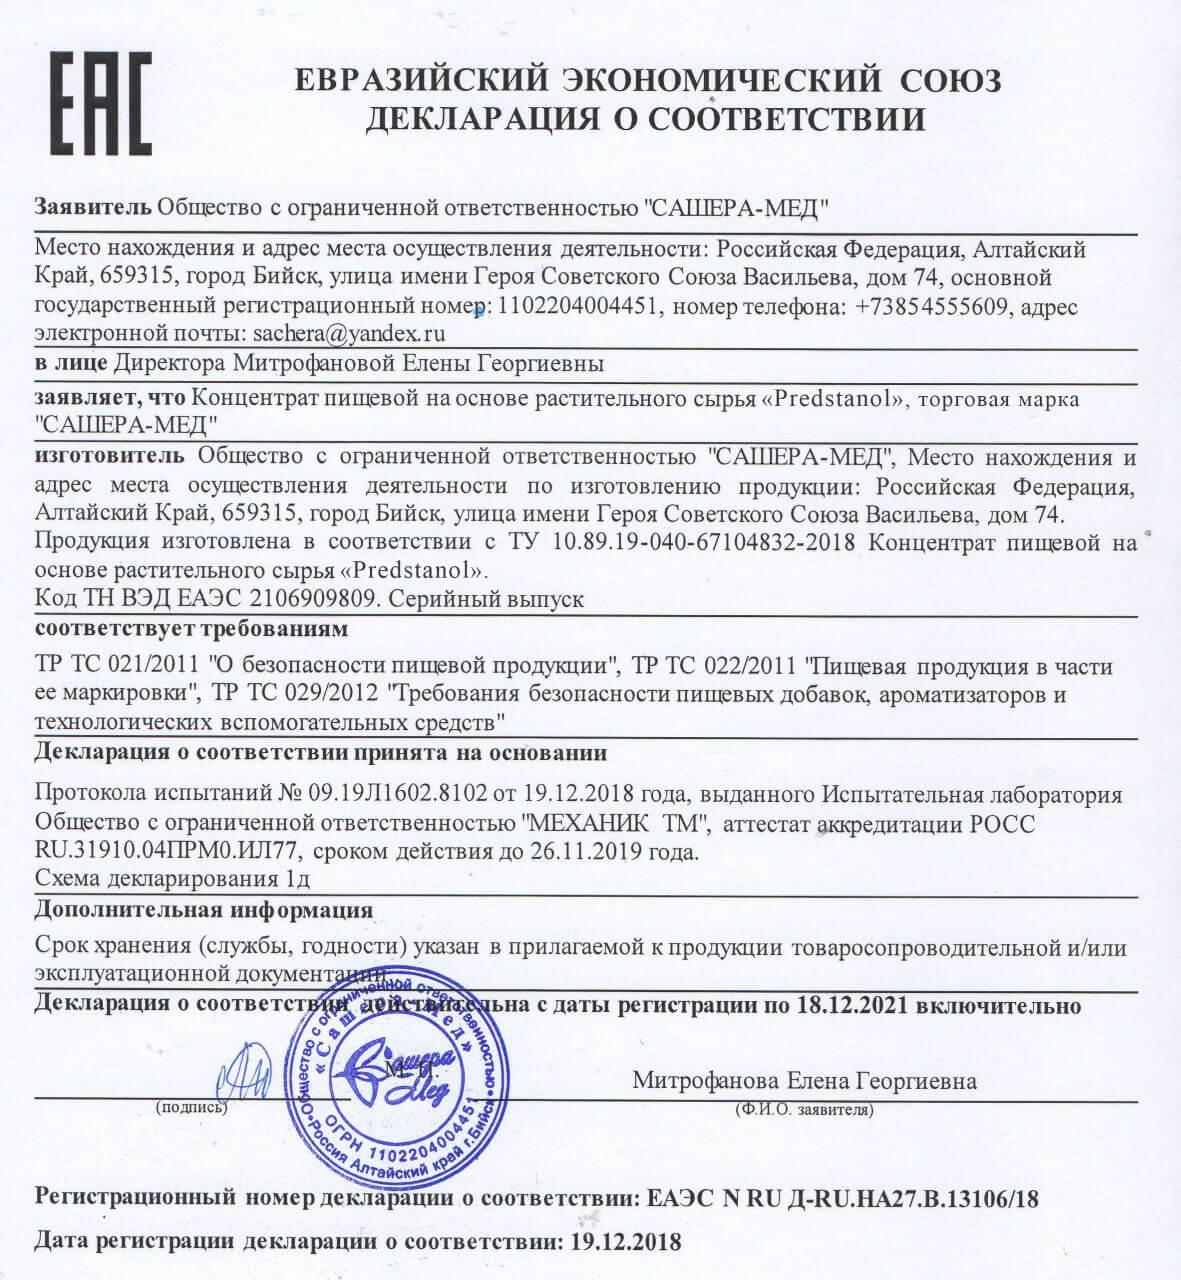 Сертификат на предстанол в Астрахани